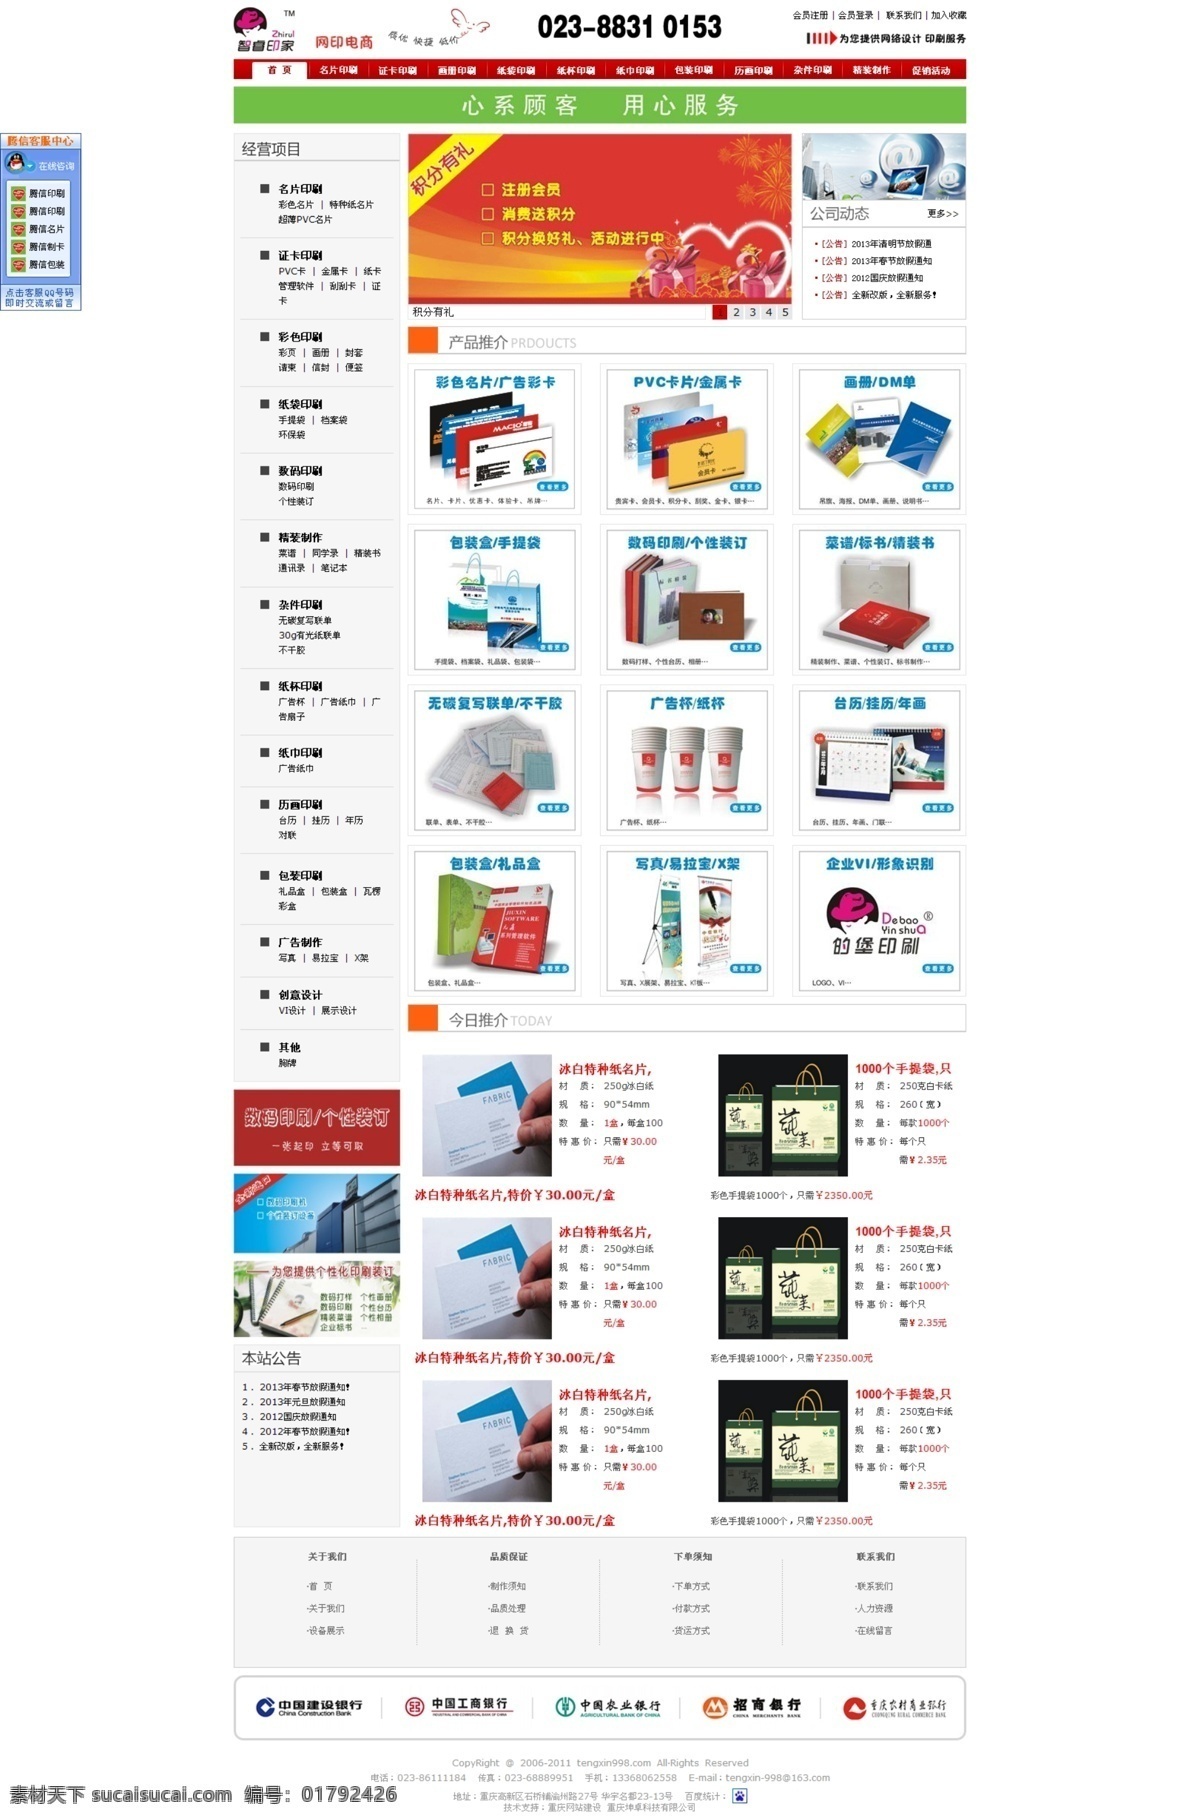 快印 网页模板 网站设计 印刷 源文件 中文模板 网站 模板下载 印刷网站 印刷网站设计 服务项目网站 网页素材